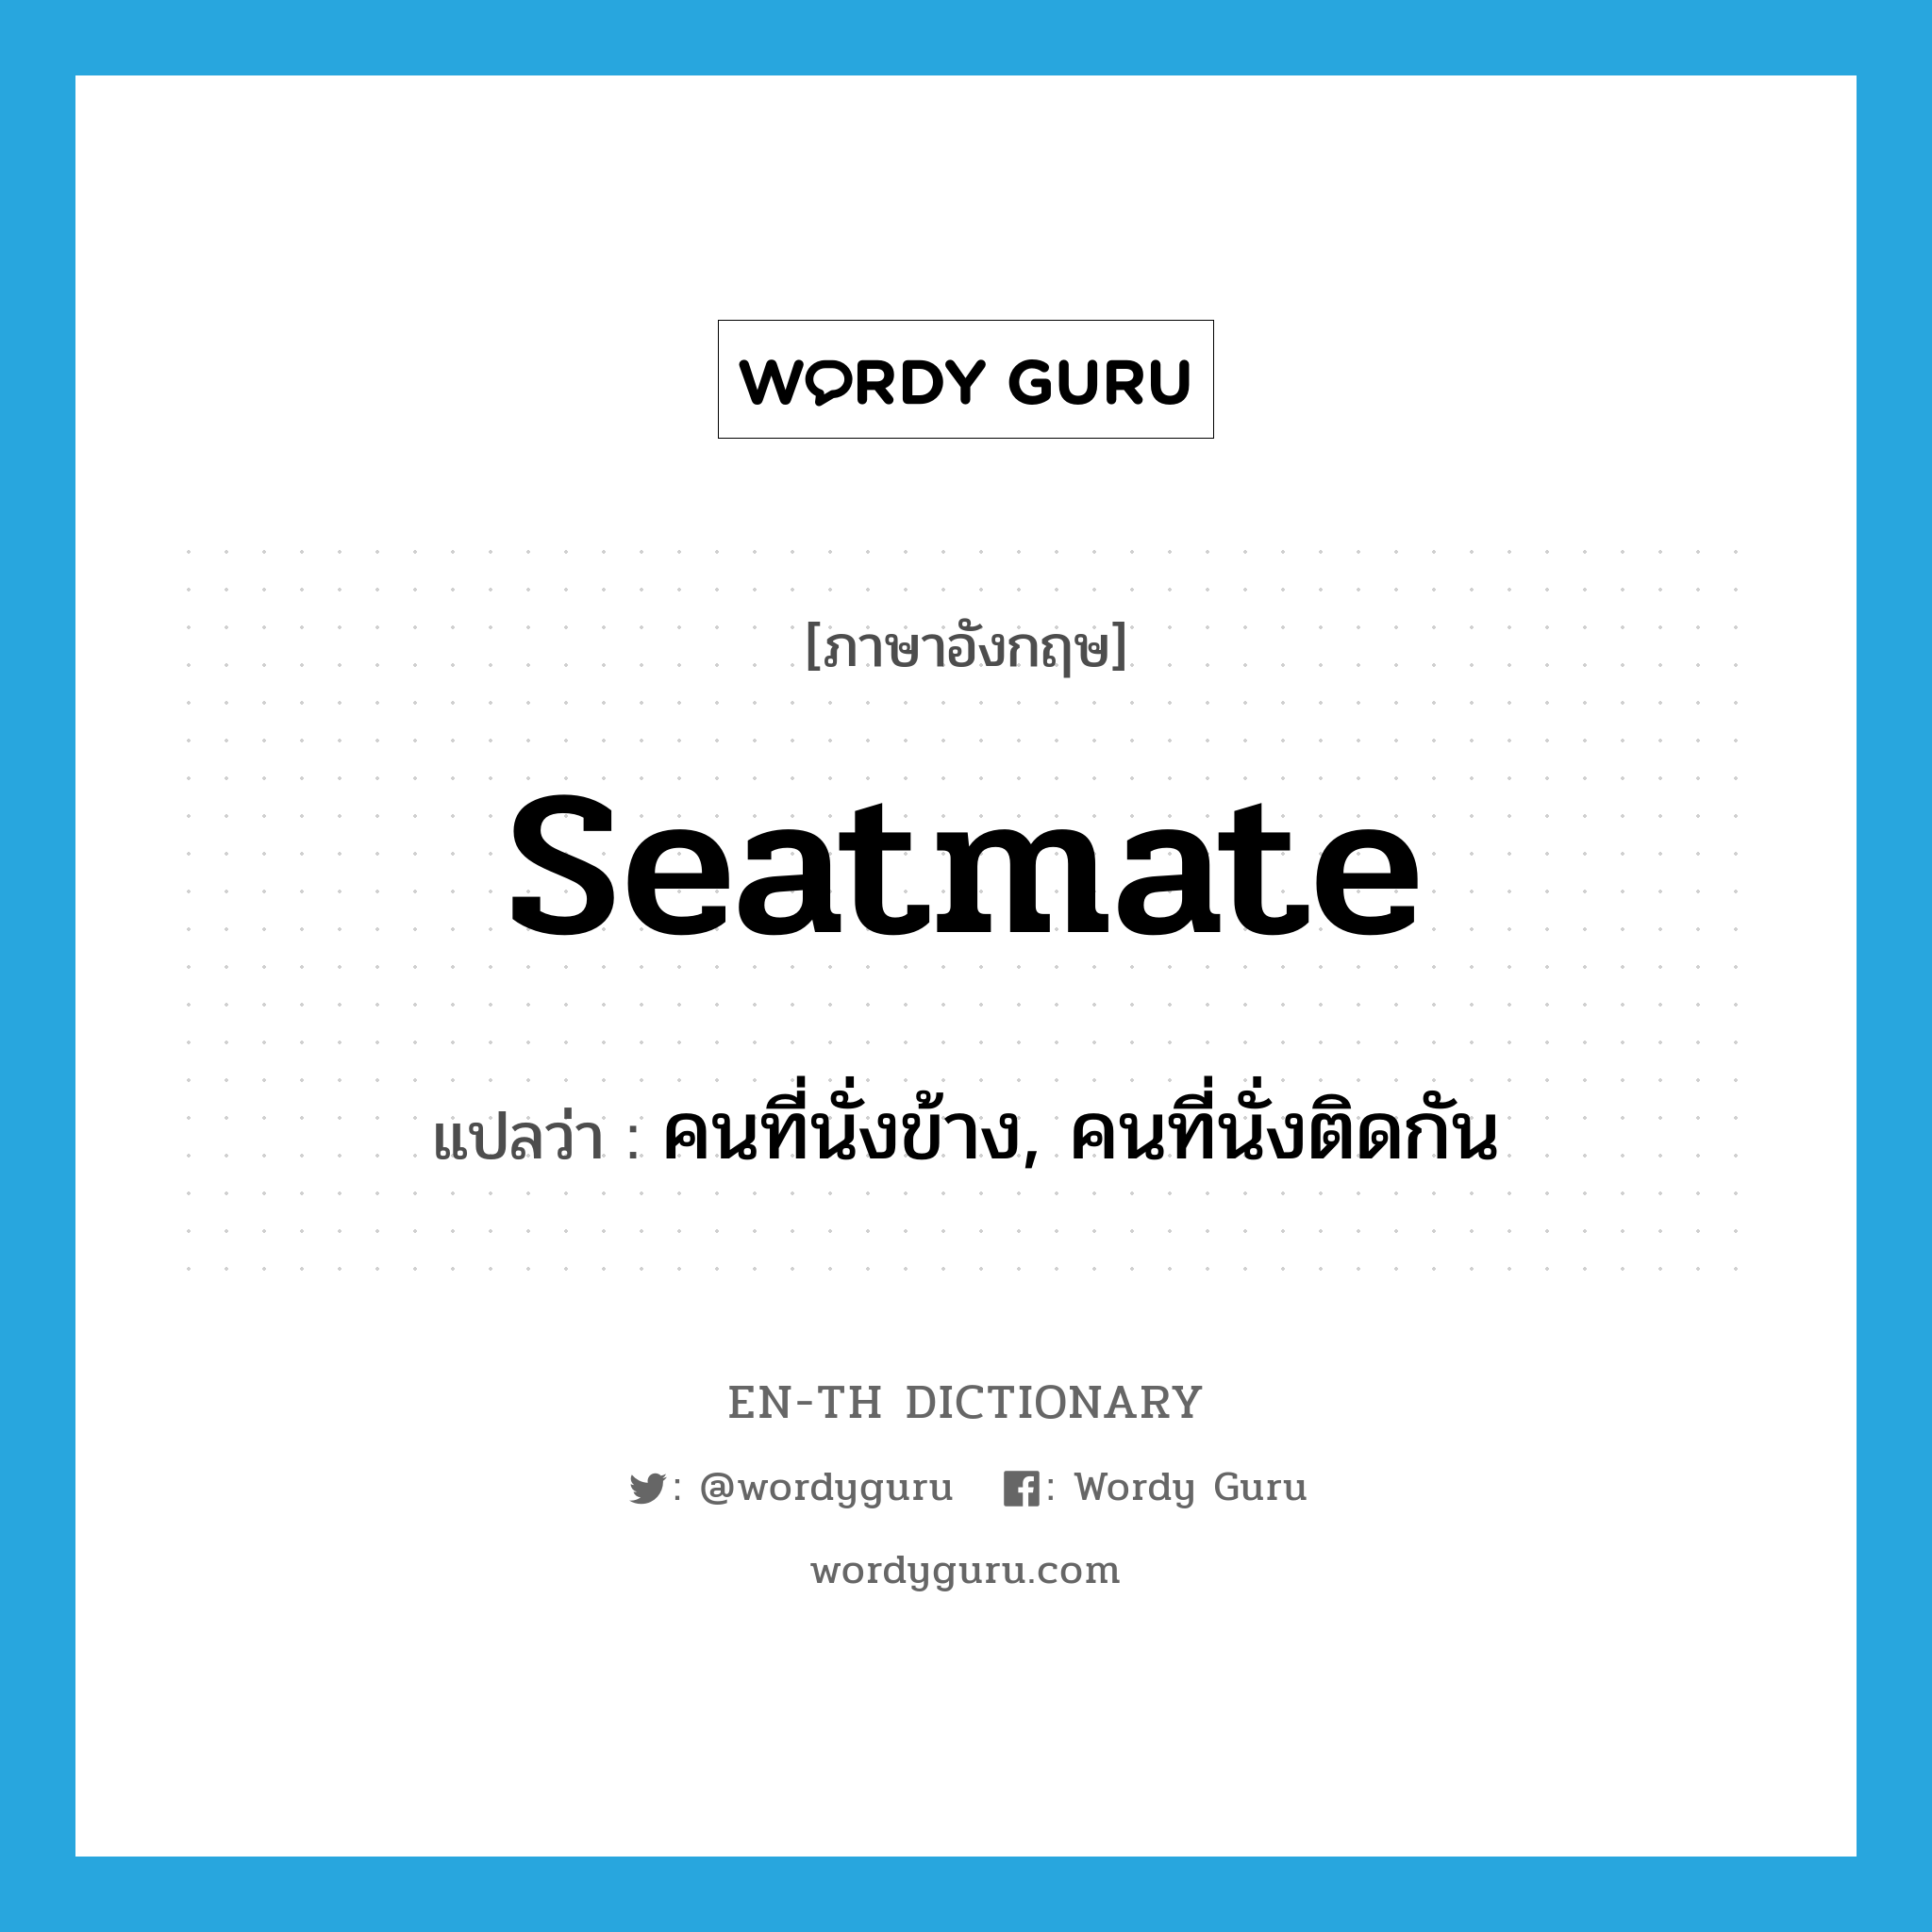 คนที่นั่งข้าง, คนที่นั่งติดกัน ภาษาอังกฤษ?, คำศัพท์ภาษาอังกฤษ คนที่นั่งข้าง, คนที่นั่งติดกัน แปลว่า seatmate ประเภท N หมวด N